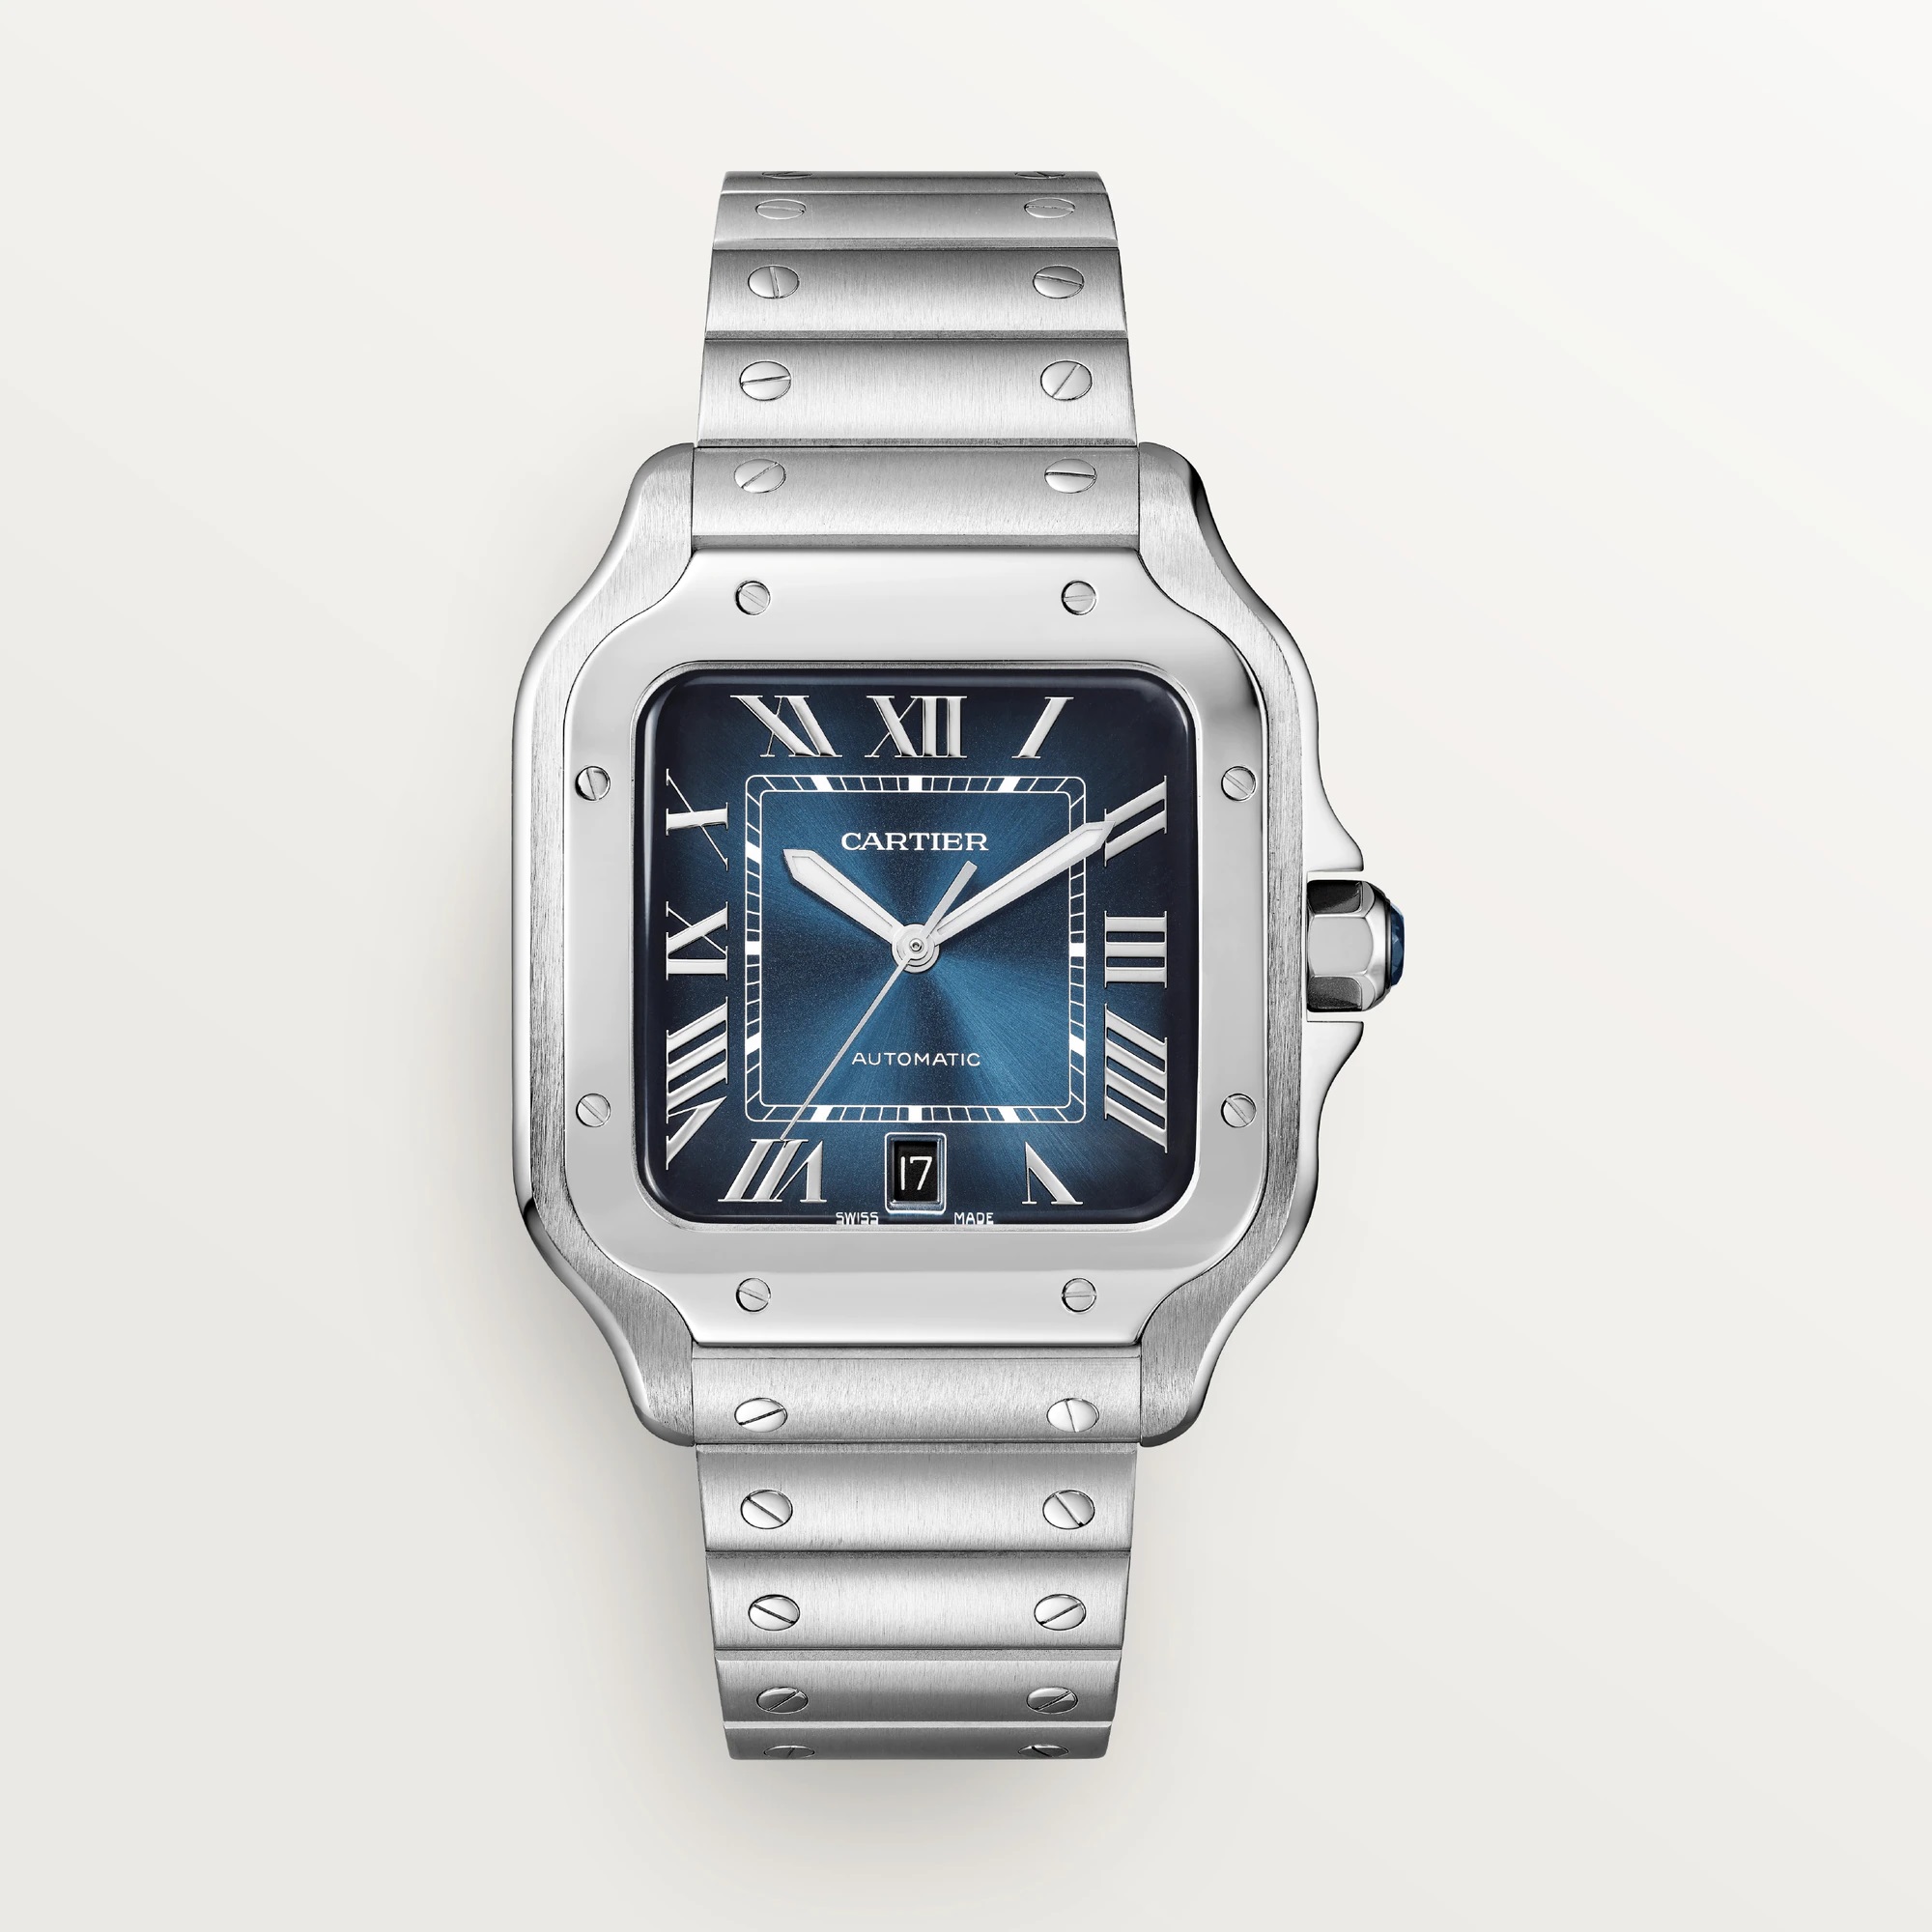 Santos de Cartier Steel Watch, large
